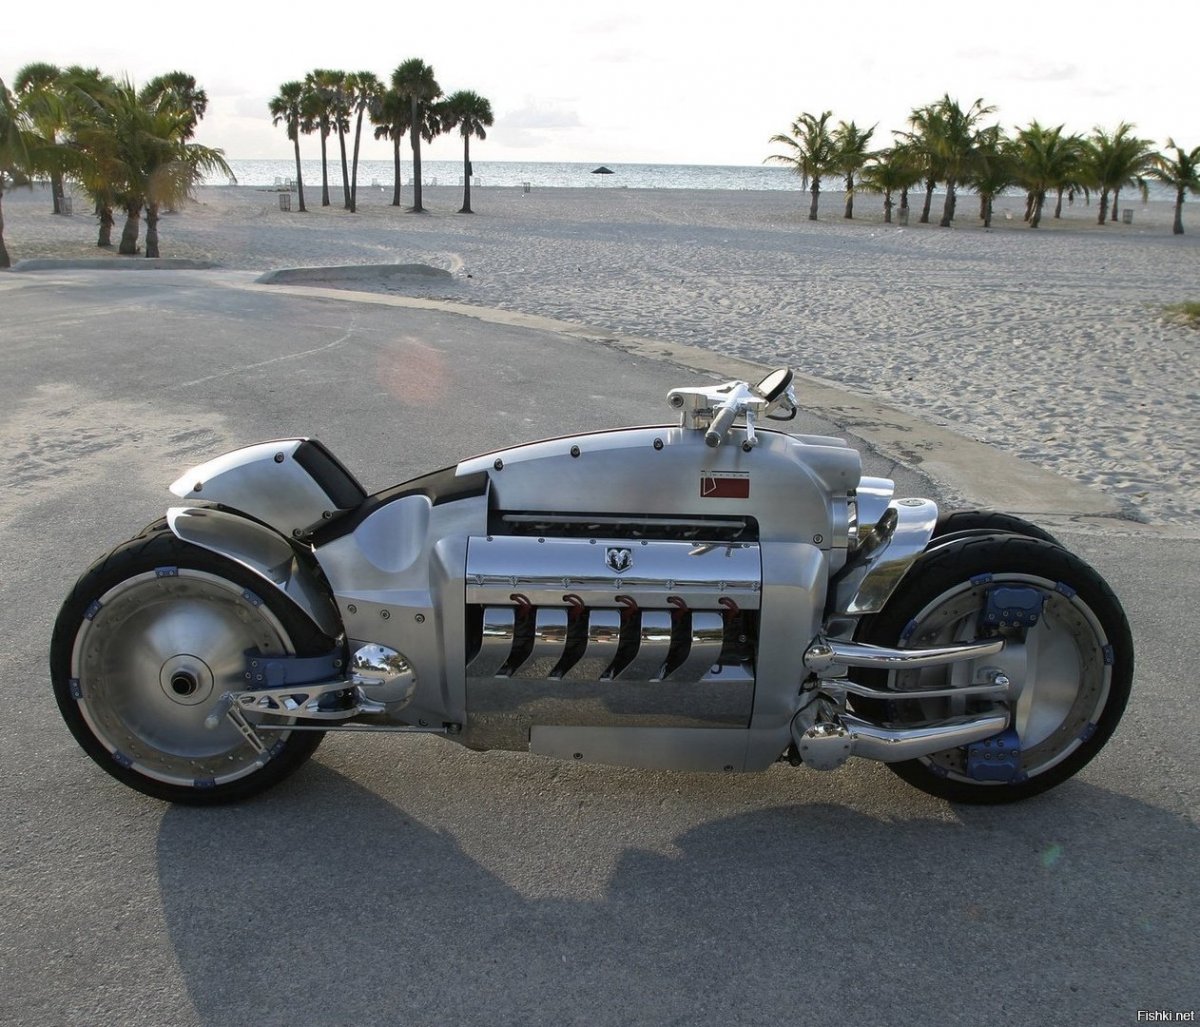 Мотоцикл tron Light Cycle